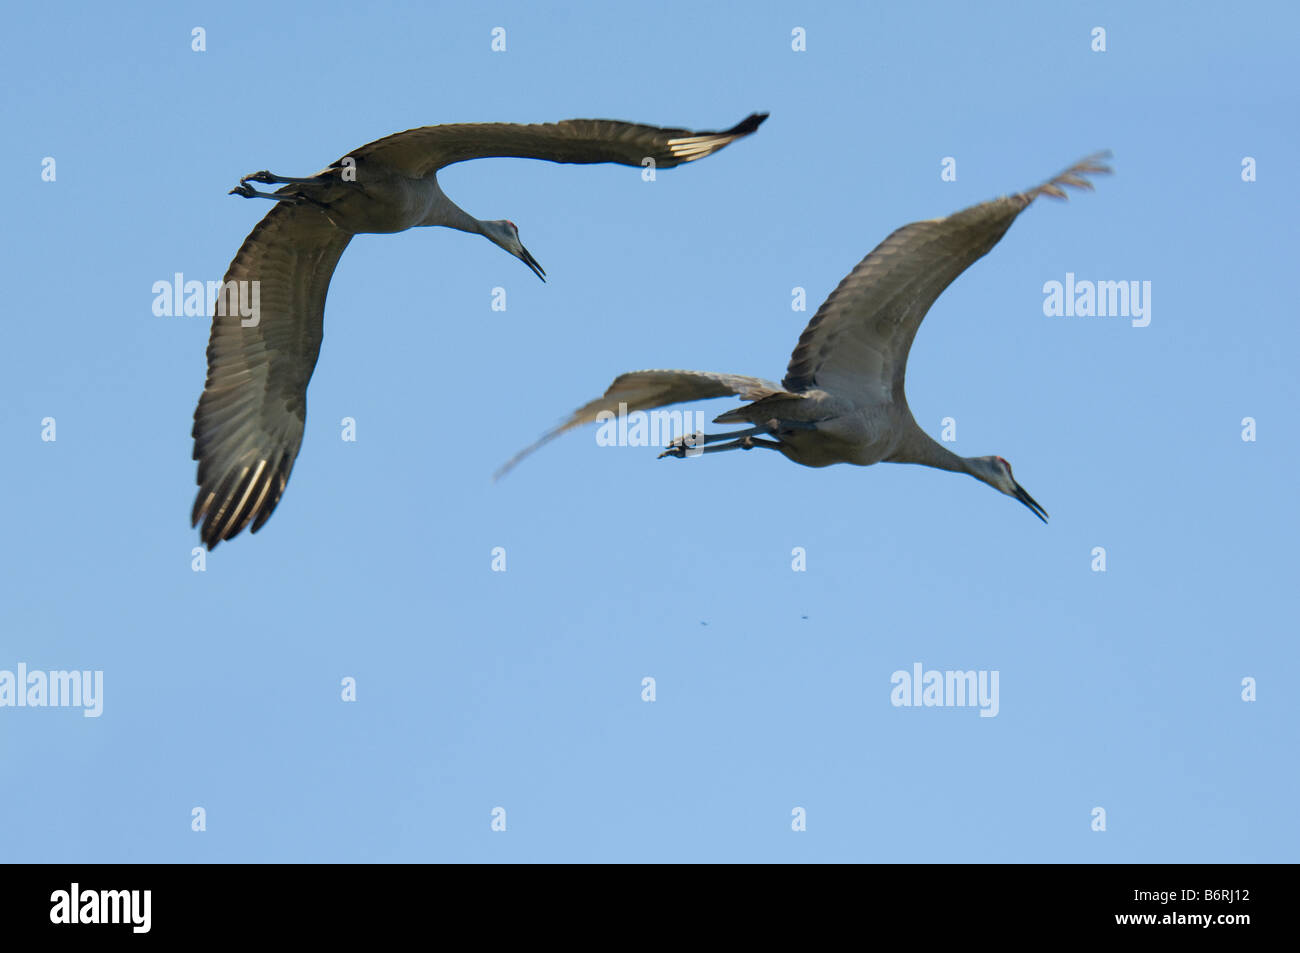 Pair of Sandhill Cranes in flight against blue sky Stock Photo